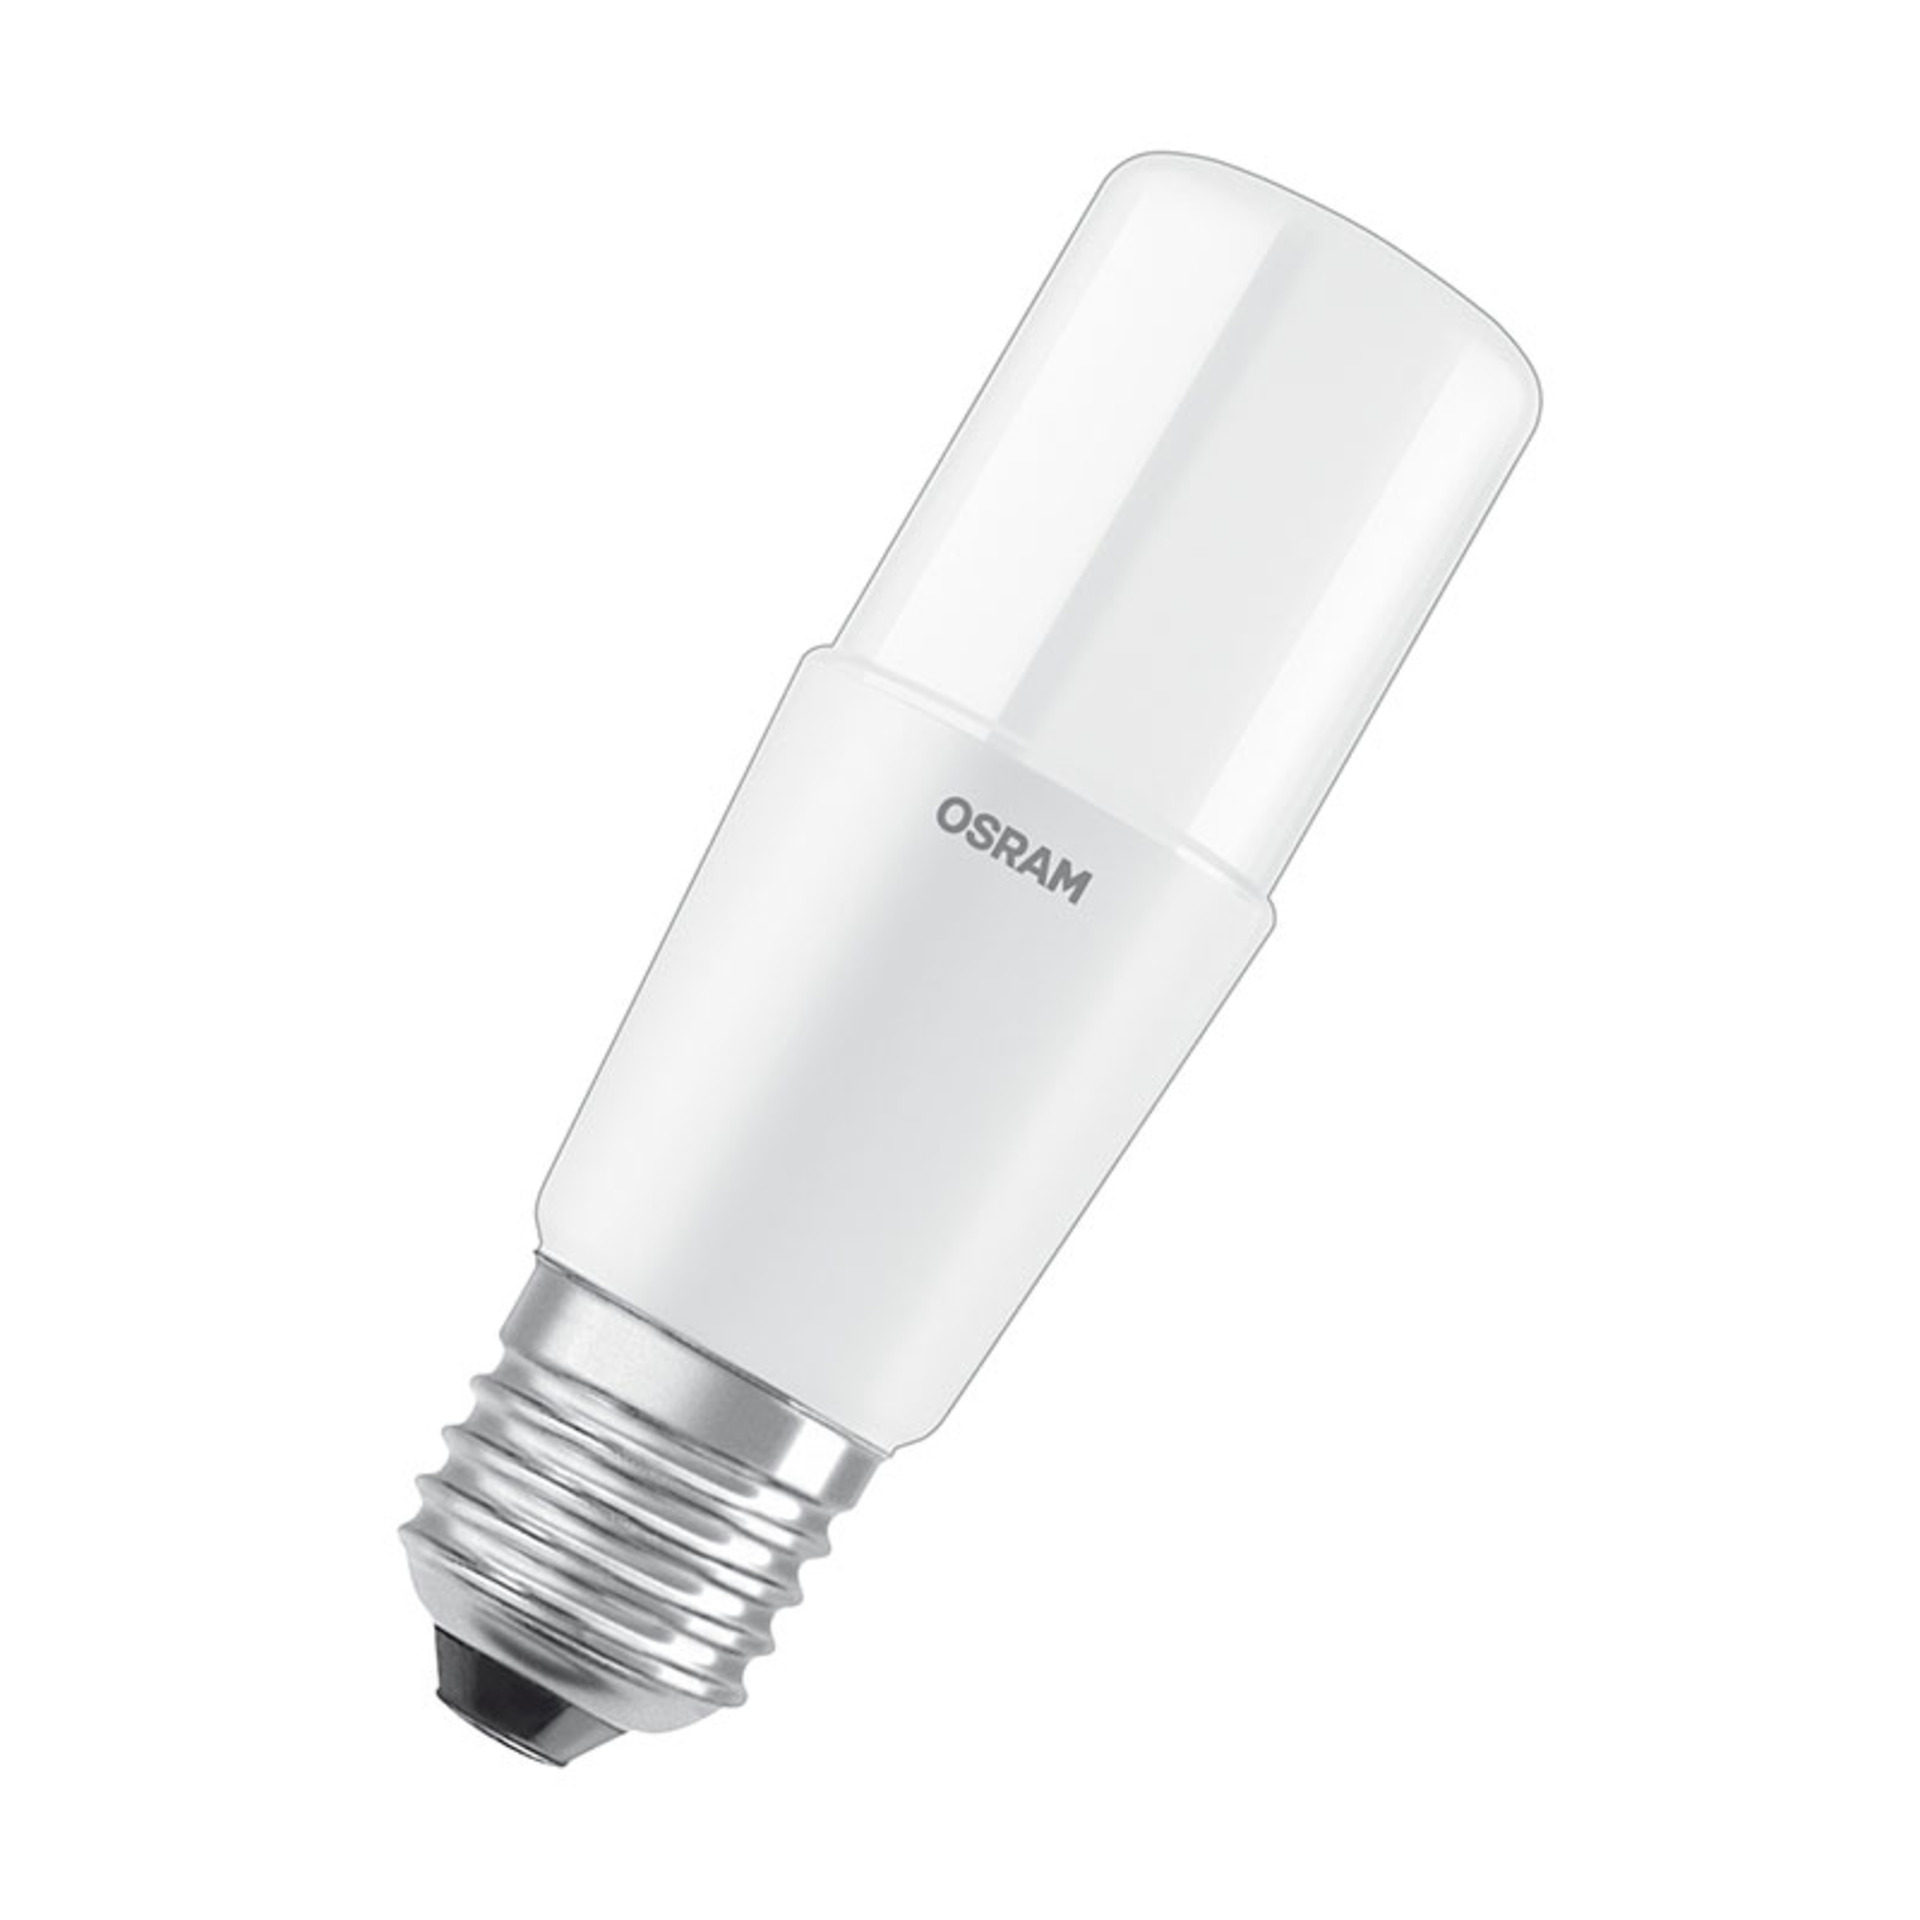 OSRAM LED STAR 9-W-LED-Lampe E27- warmweiss- schlanke Ausfhrung- Ersatz fr 75-W-Glhlampen